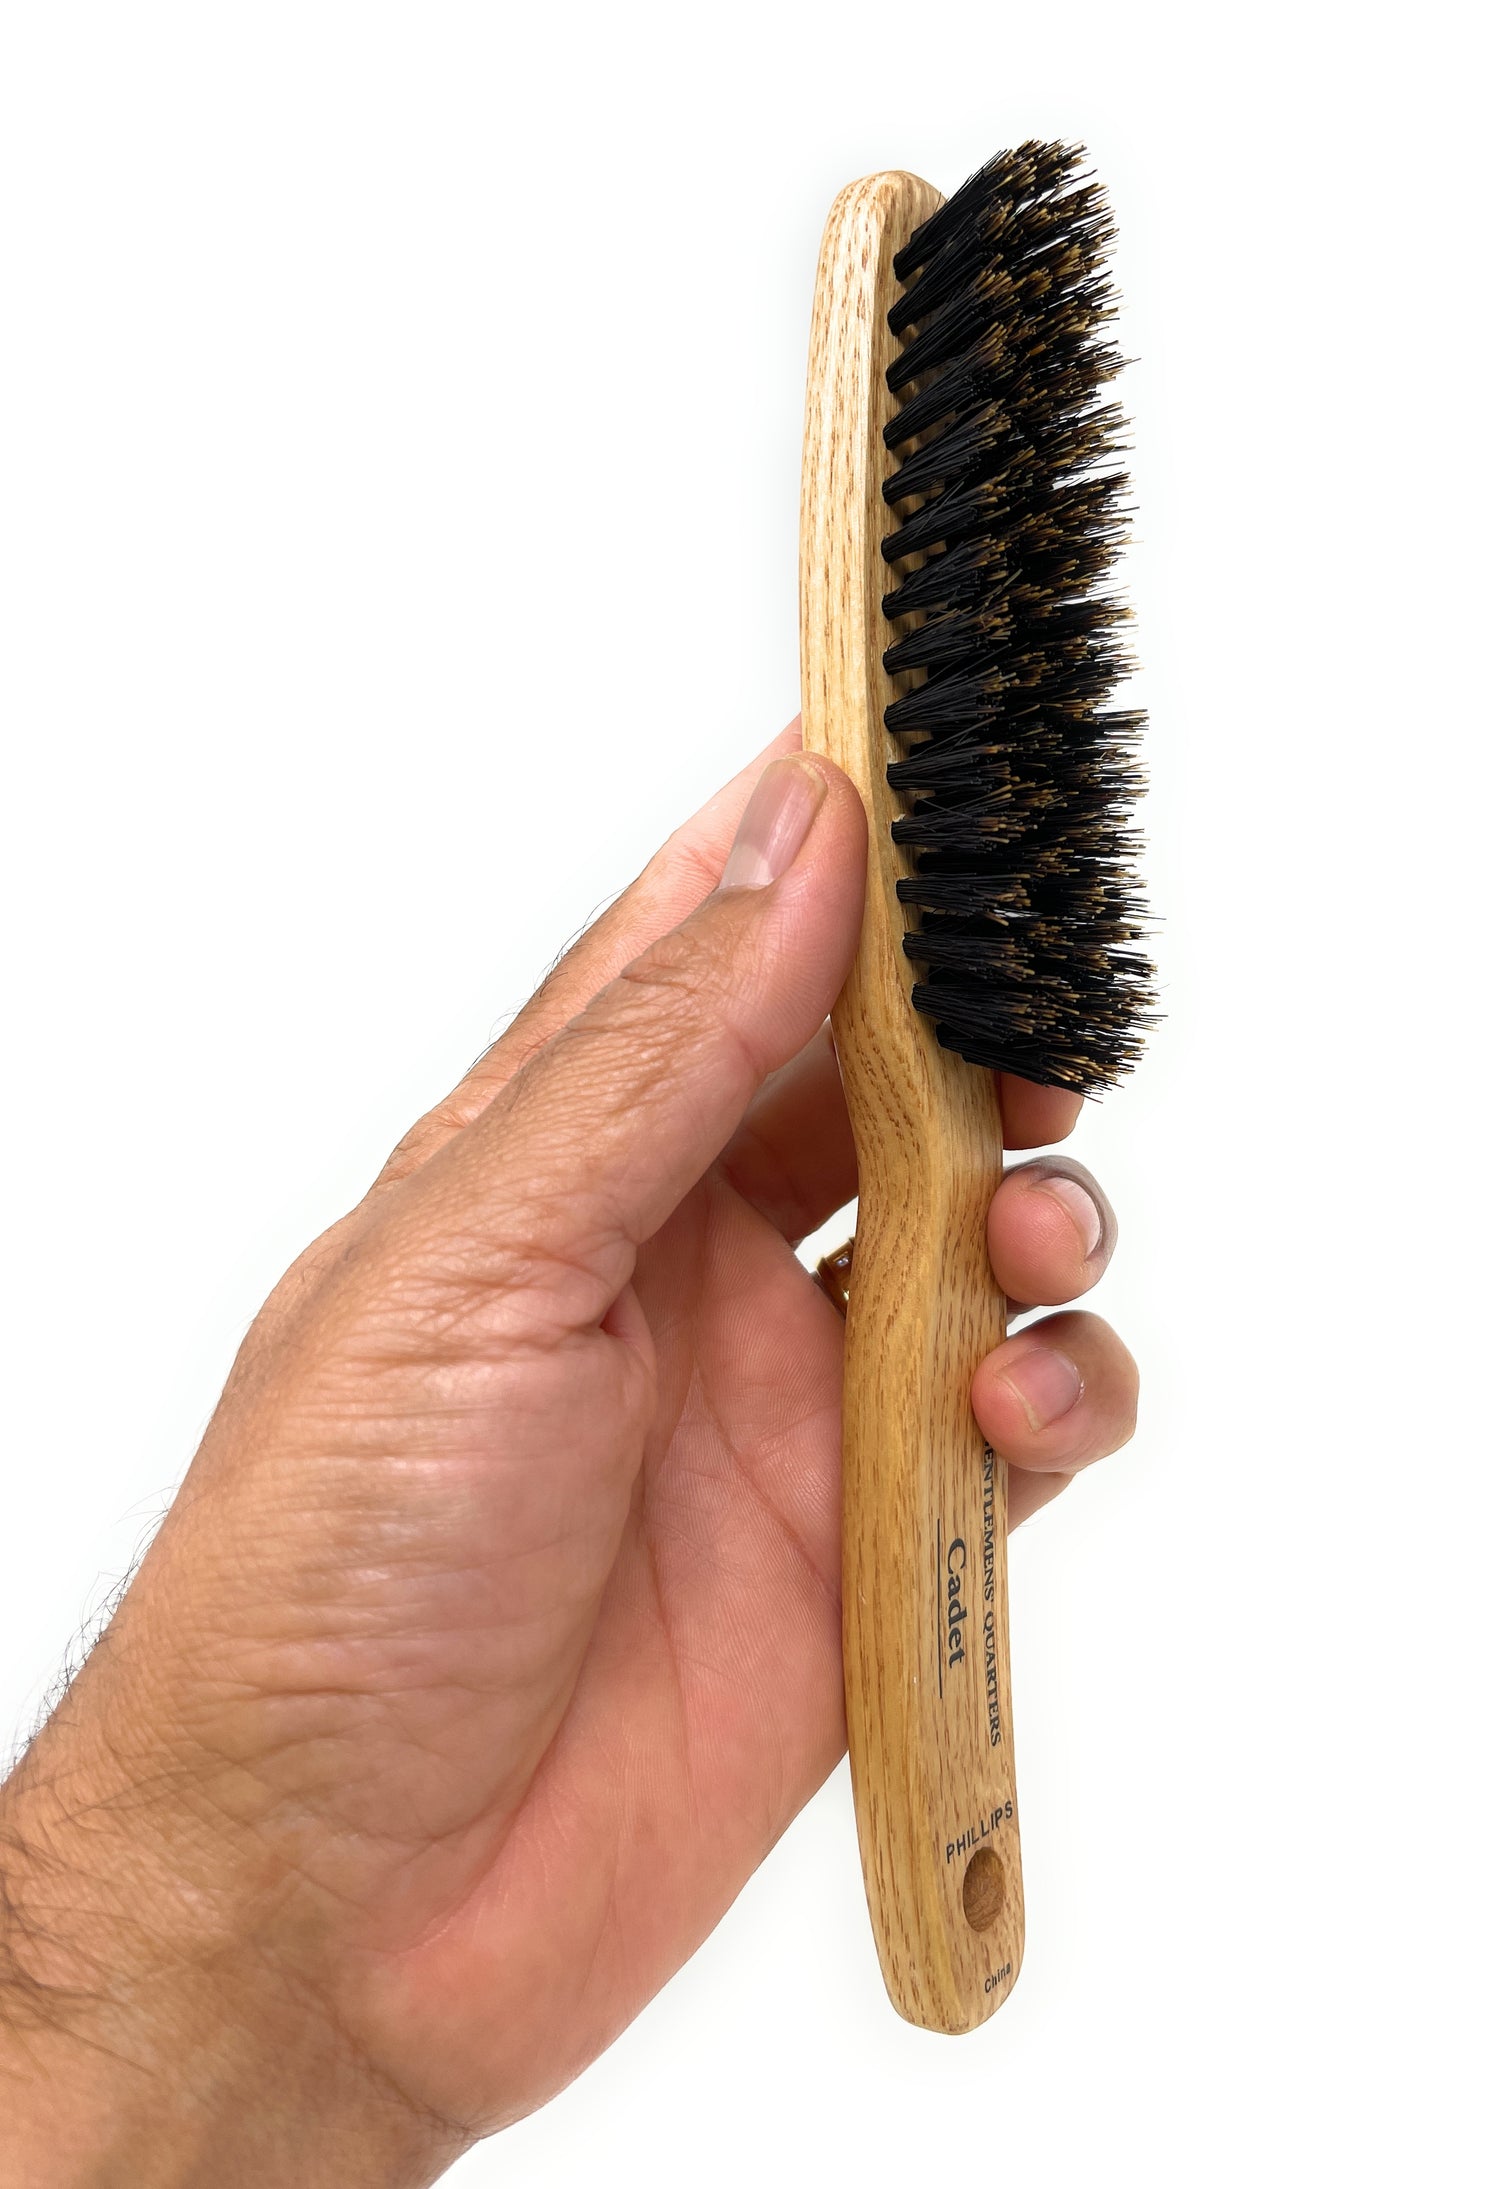 Cepillo estrecho de madera natural para pelo liso